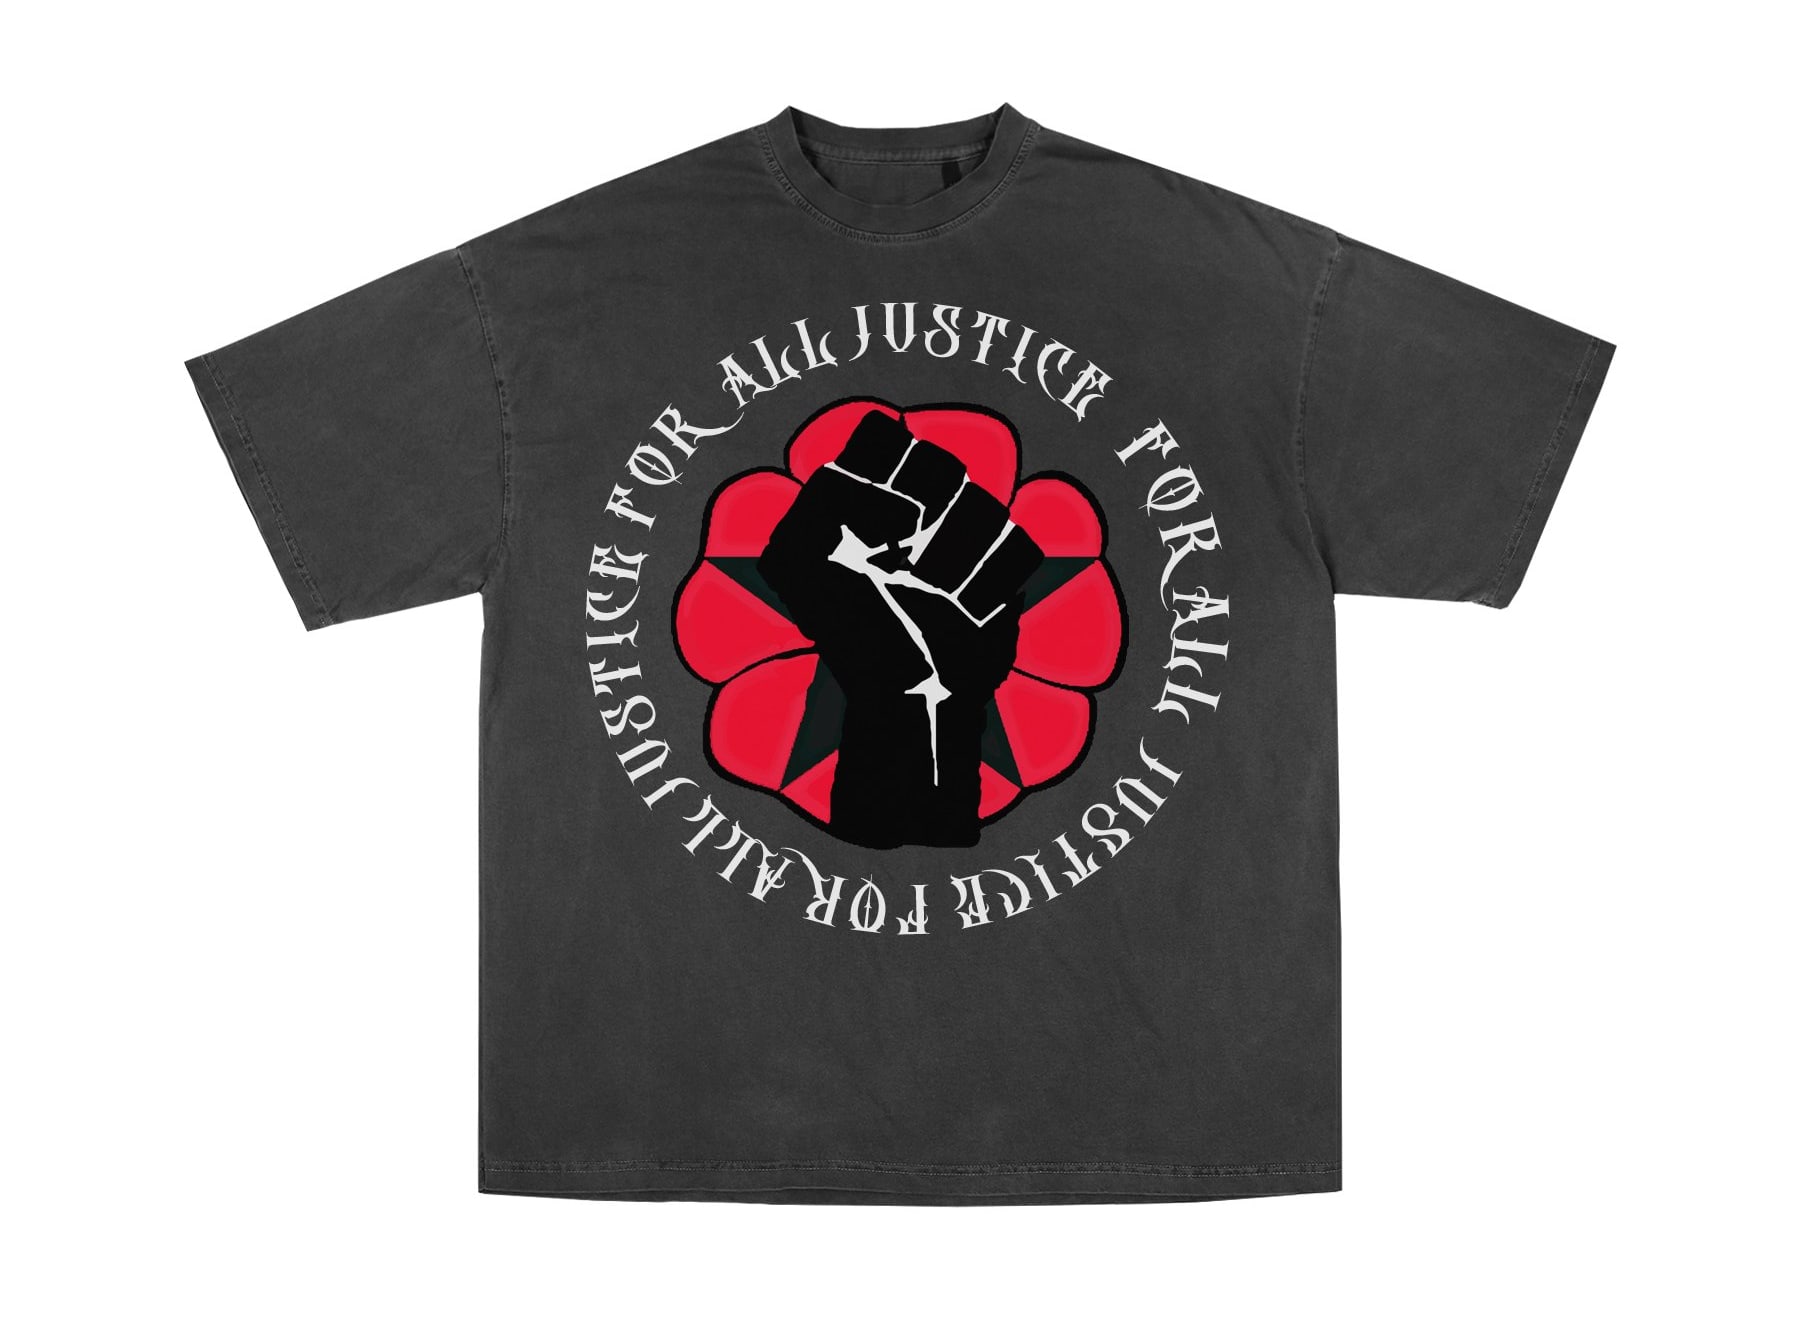 Kito Justice T-shirt